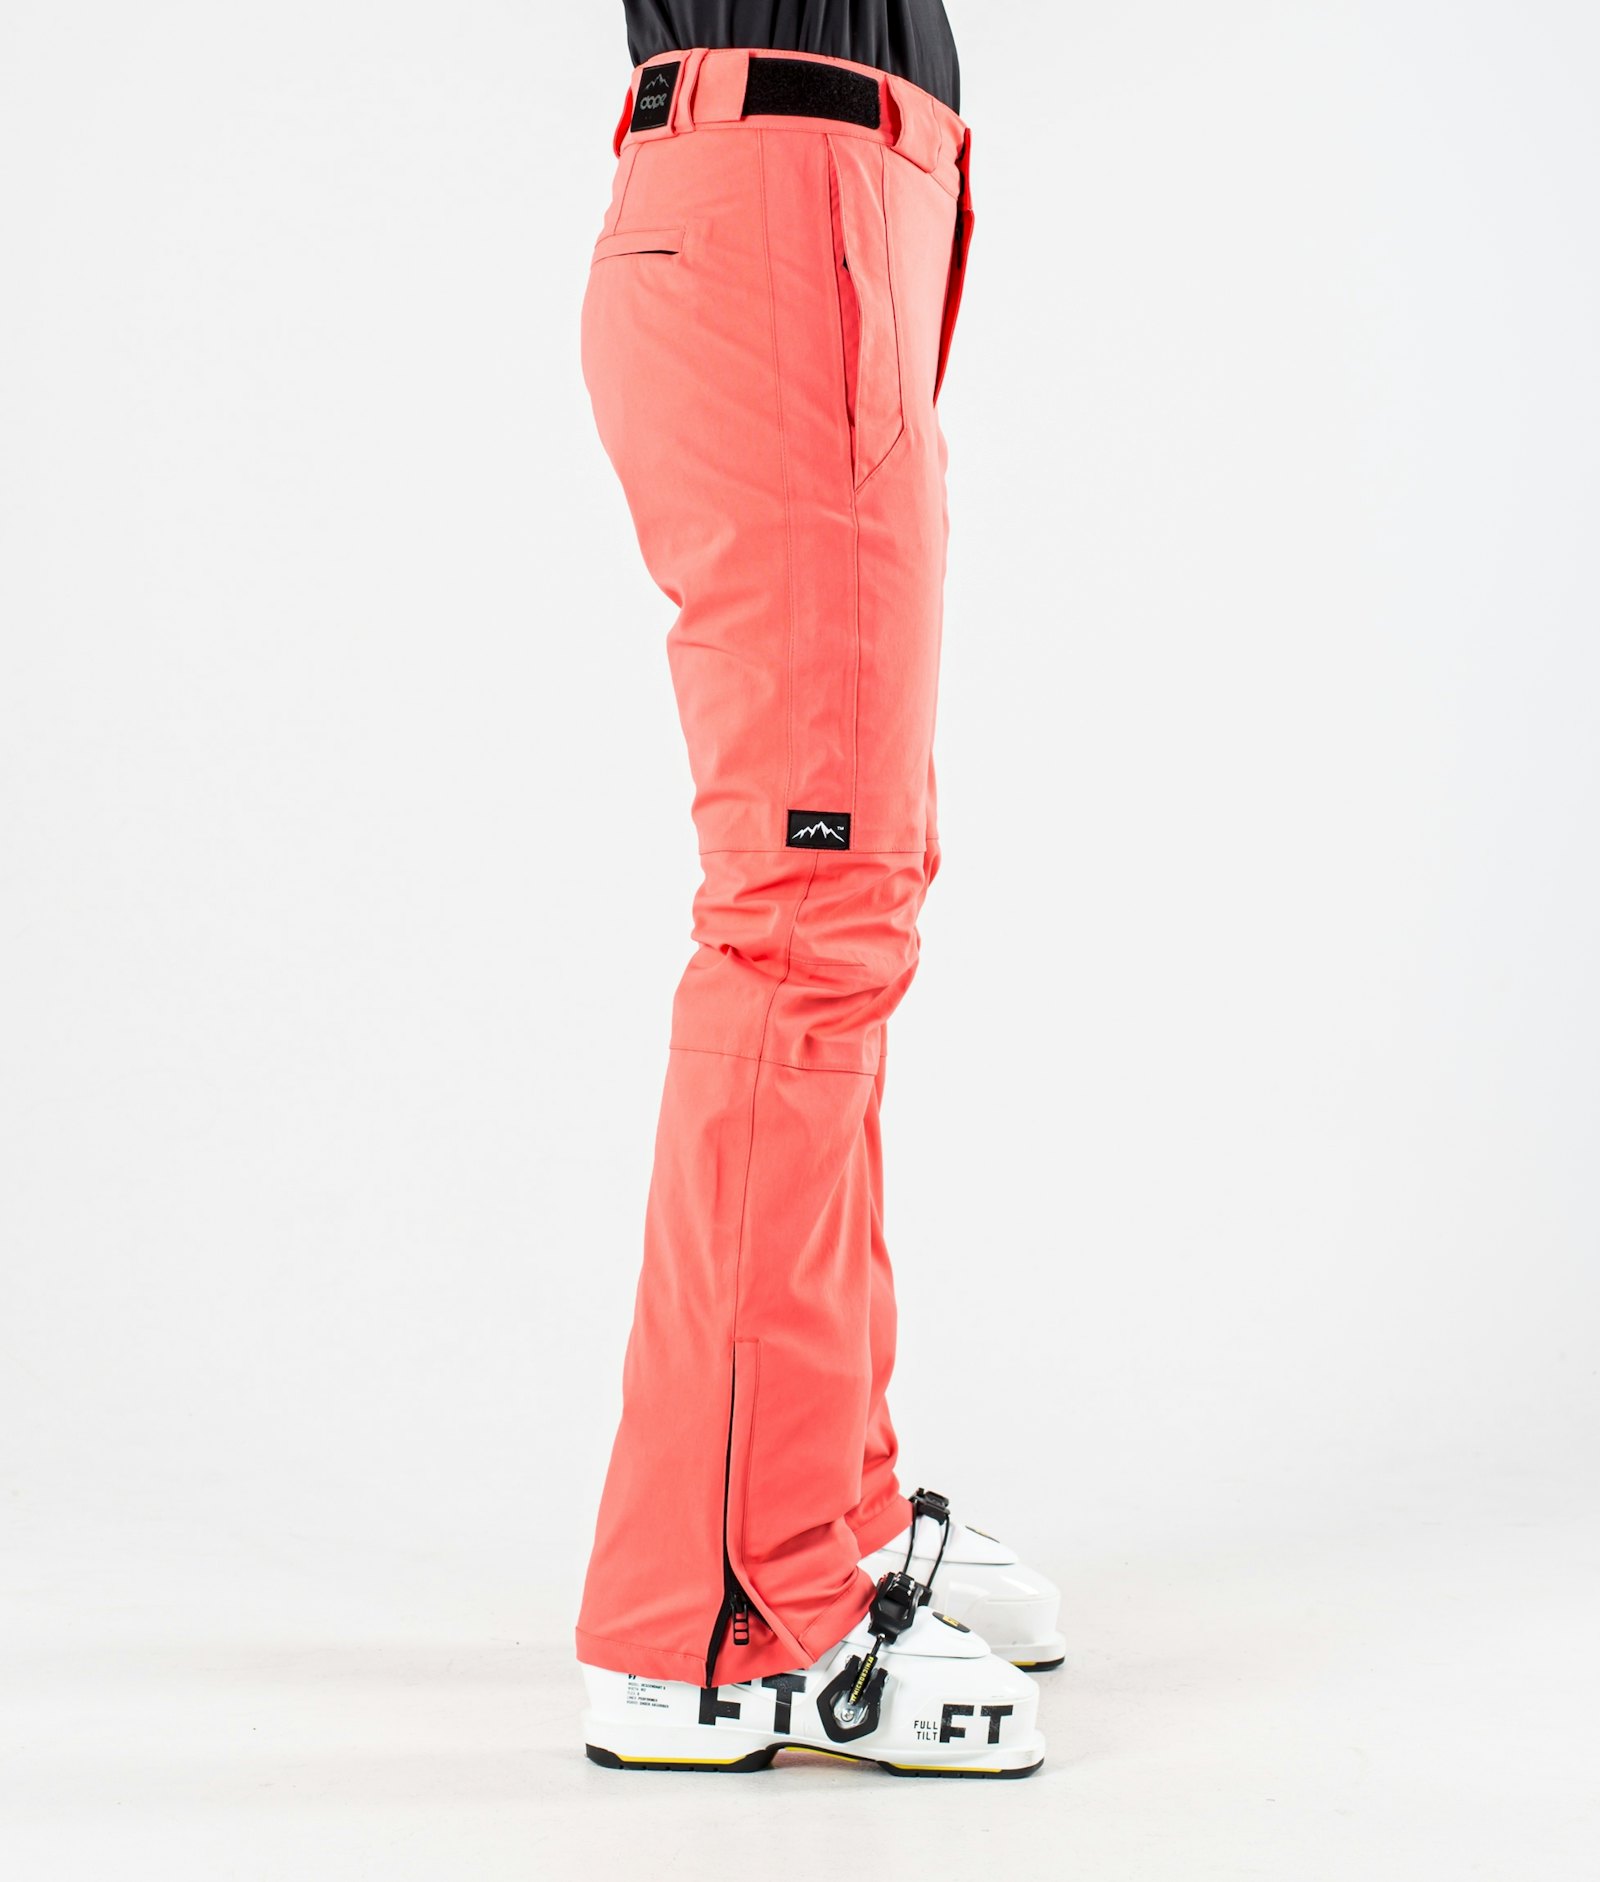 Con W 2020 Pantalones Esquí Mujer Coral